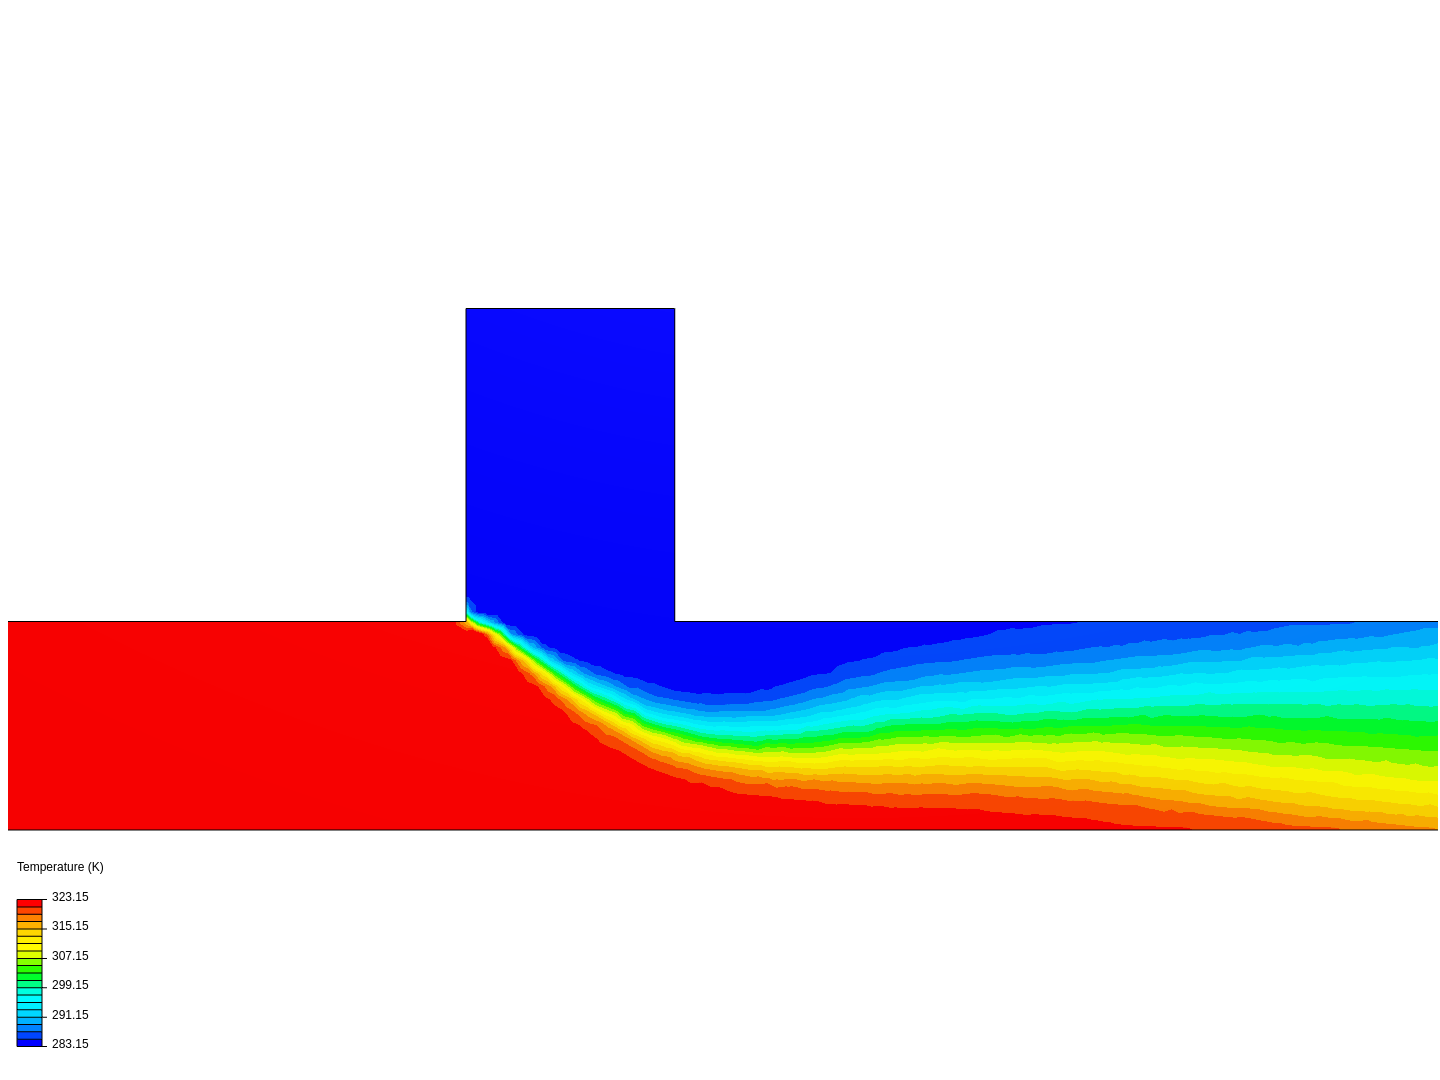 Heat Transfer in a Fluid image